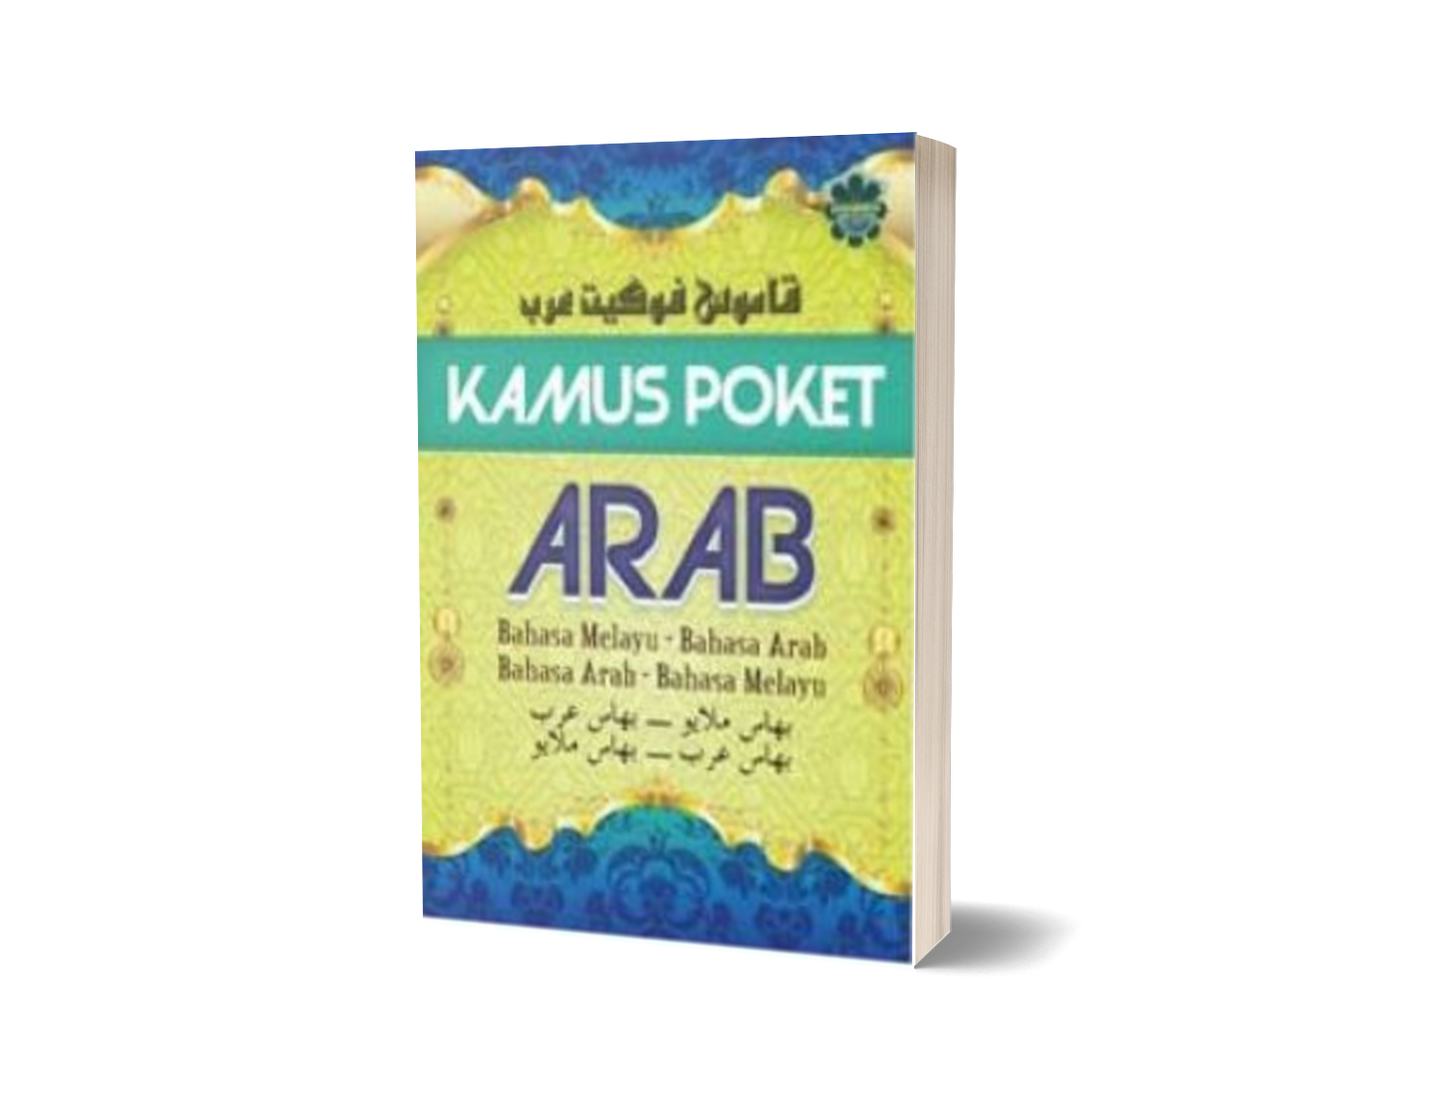 Kamus Poket Arab : Bahasa Melayu - Bahasa Arab, Bahasa Arab - Bahasa Melayu